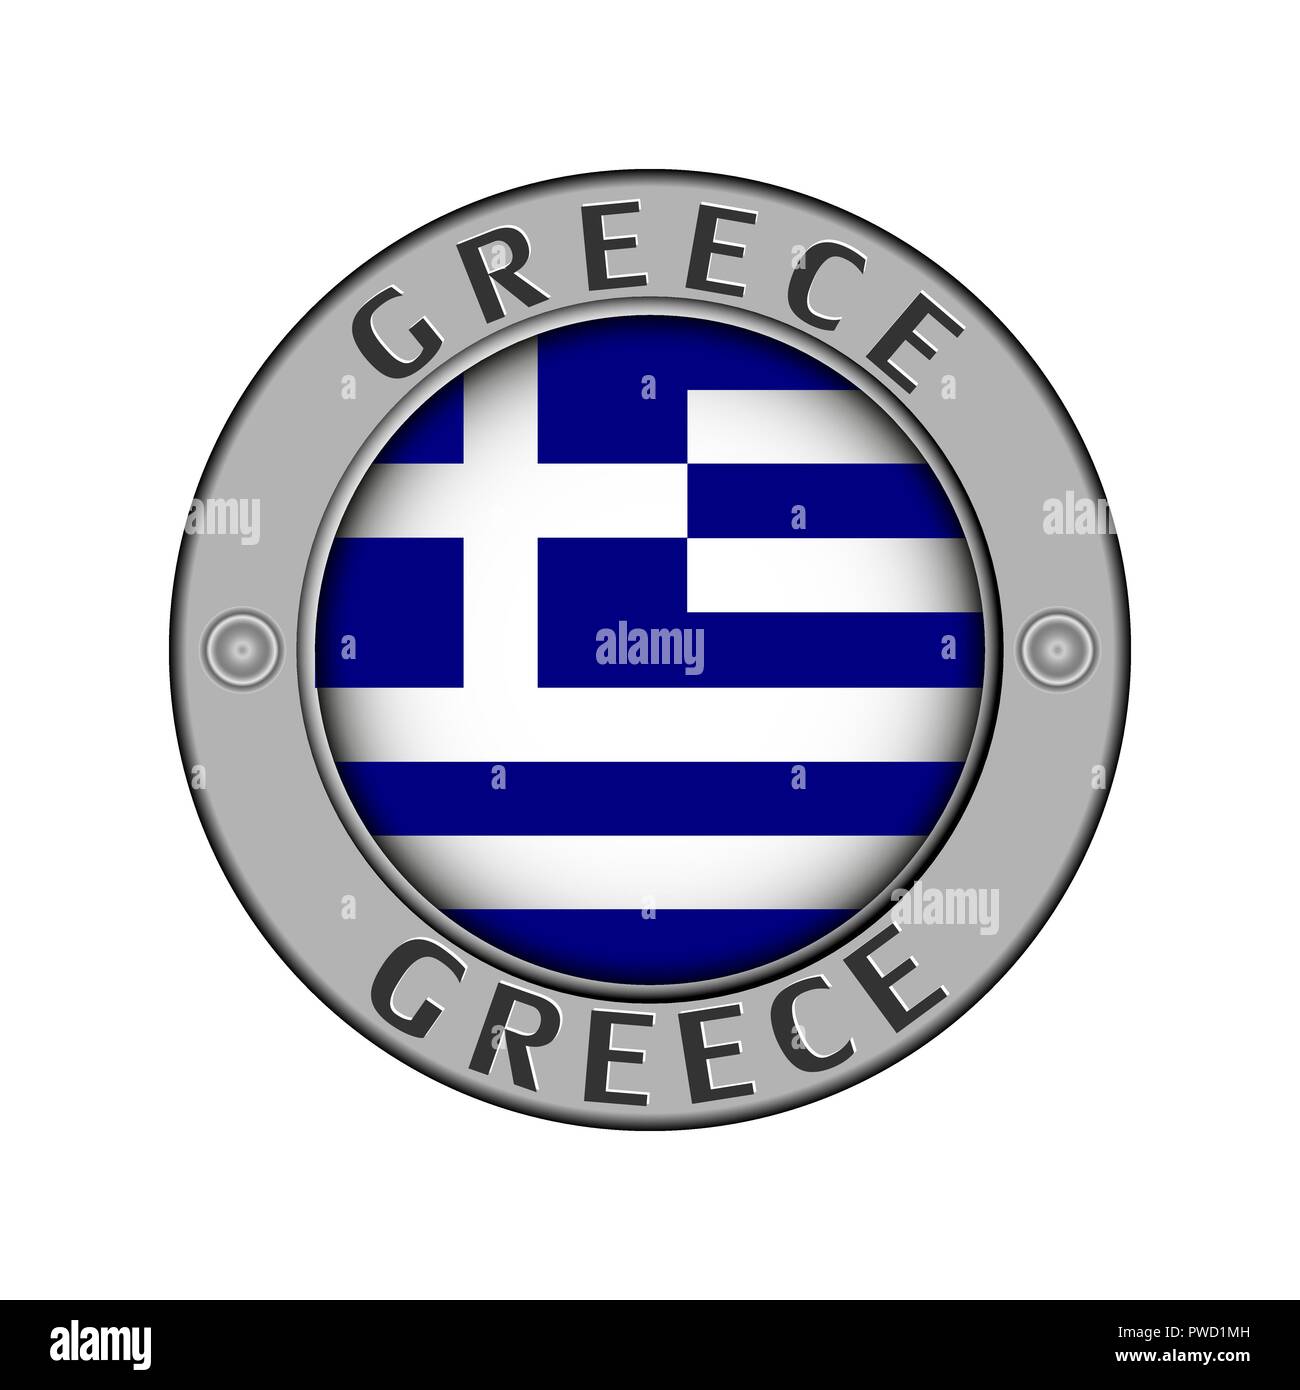 Rotondo di metallo medaglione con il nome del paese di Grecia e un indicatore rotondo nel centro Illustrazione Vettoriale